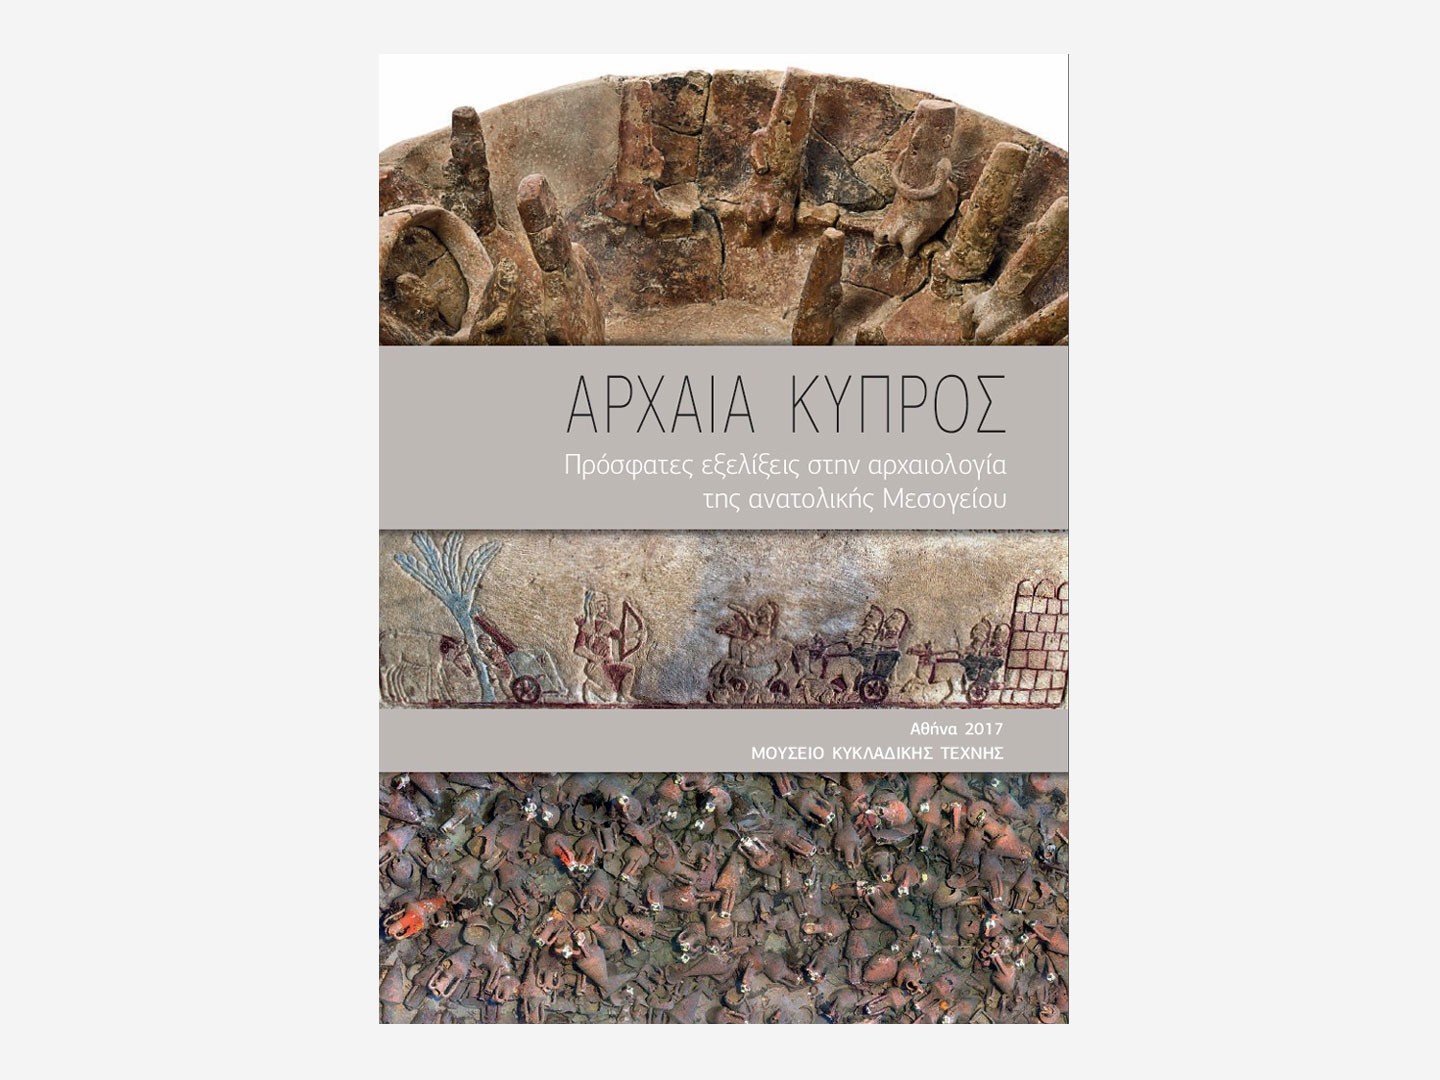 Αρχαία Κύπρος – Πρόσφατες Εξελίξεις στην Αρχαιολογία της Ανατολικής Μεσογείου